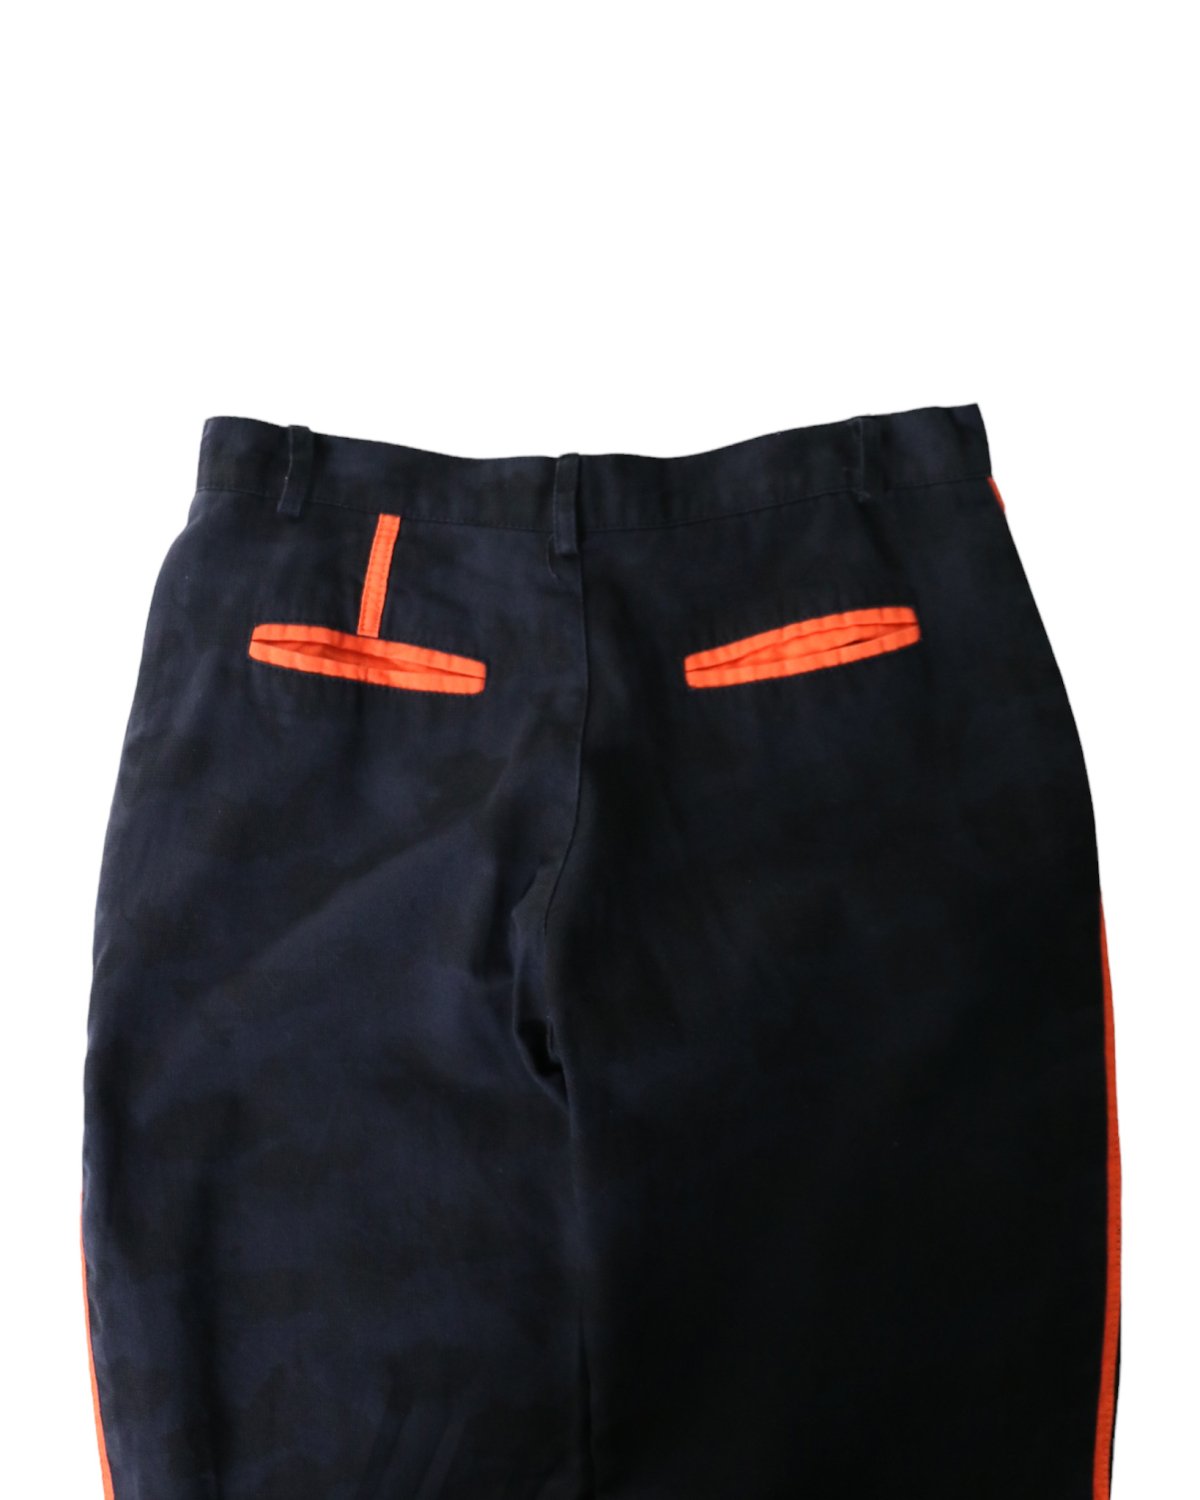 “Unknown” Design Line Pants 